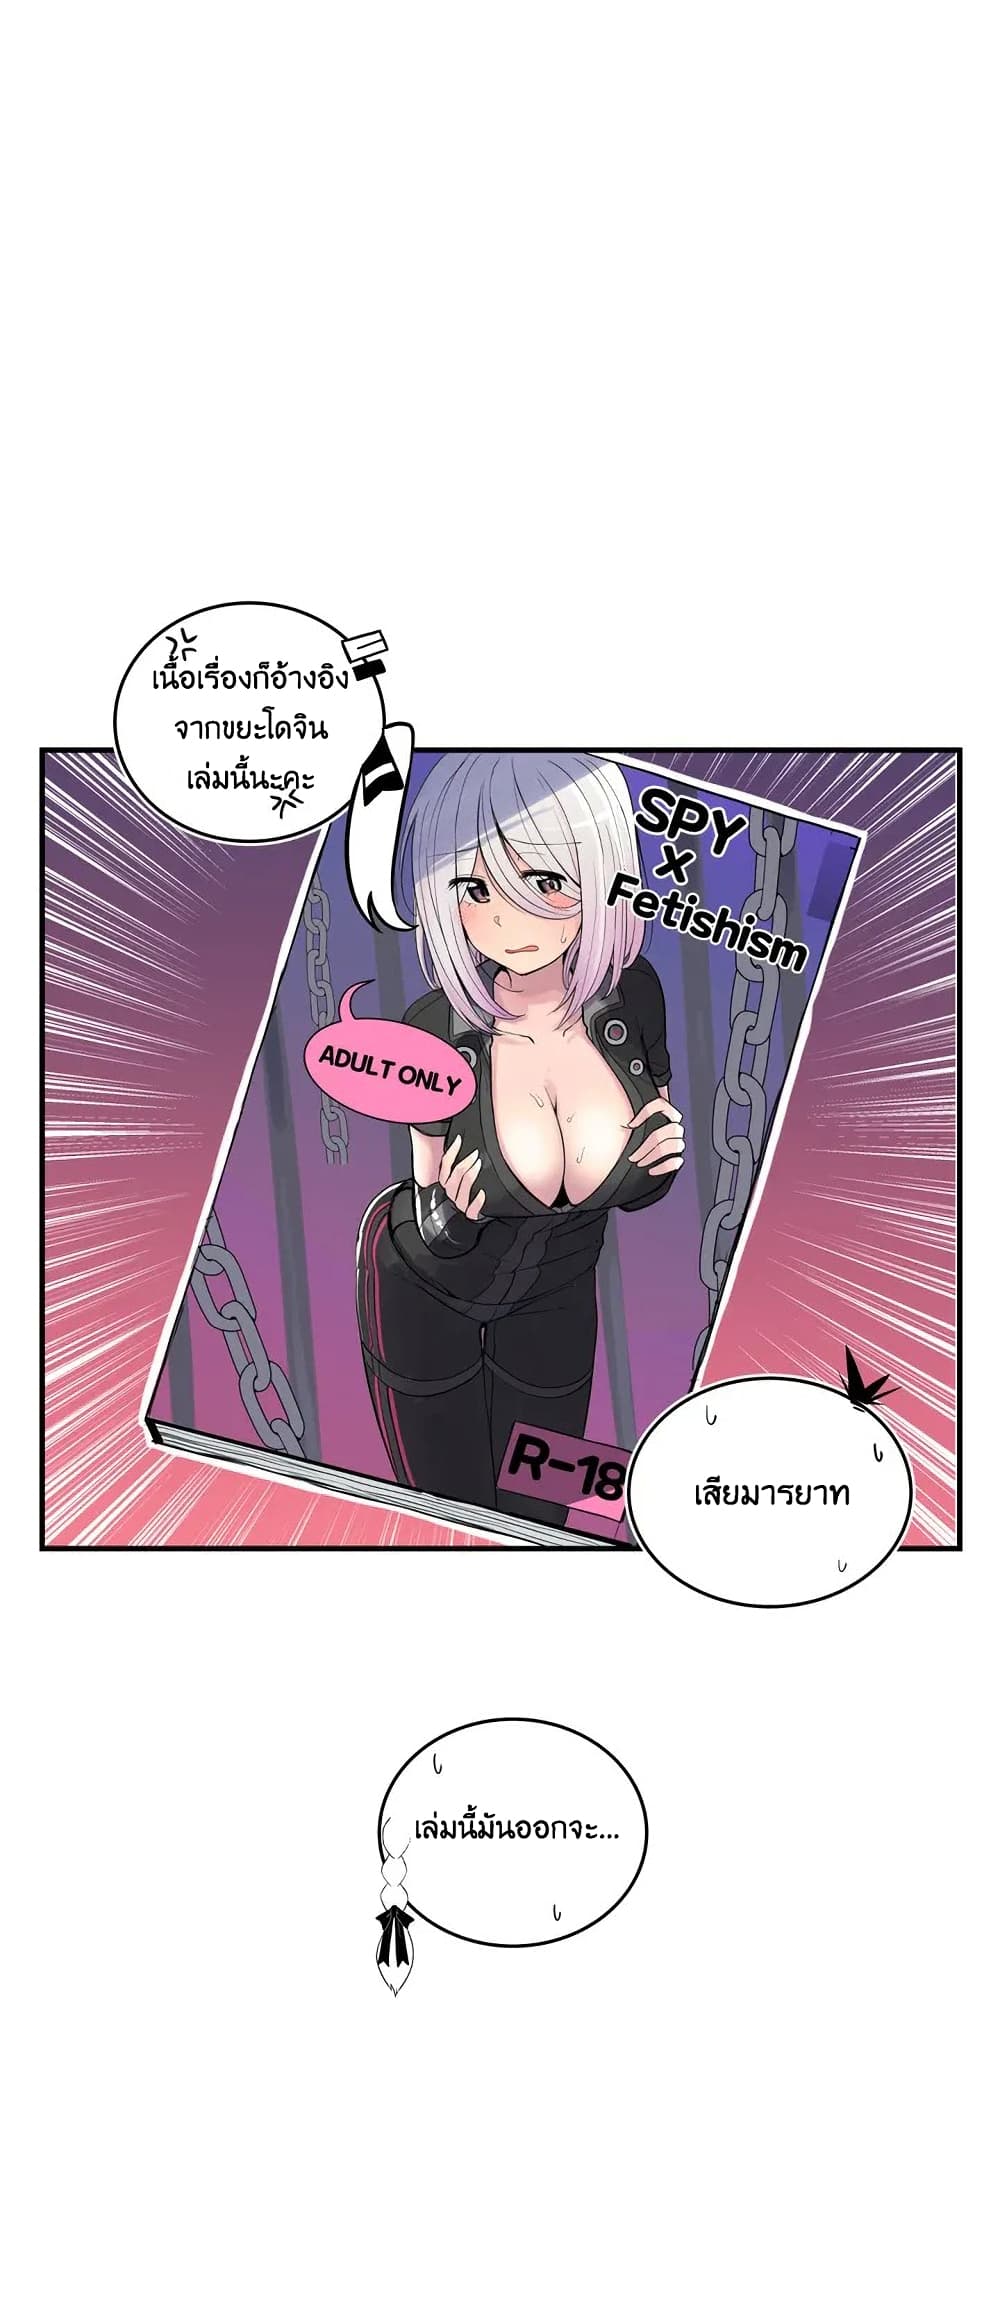 Erotic Manga Club ชมรมการ์ตูนอีโรติก 7-7